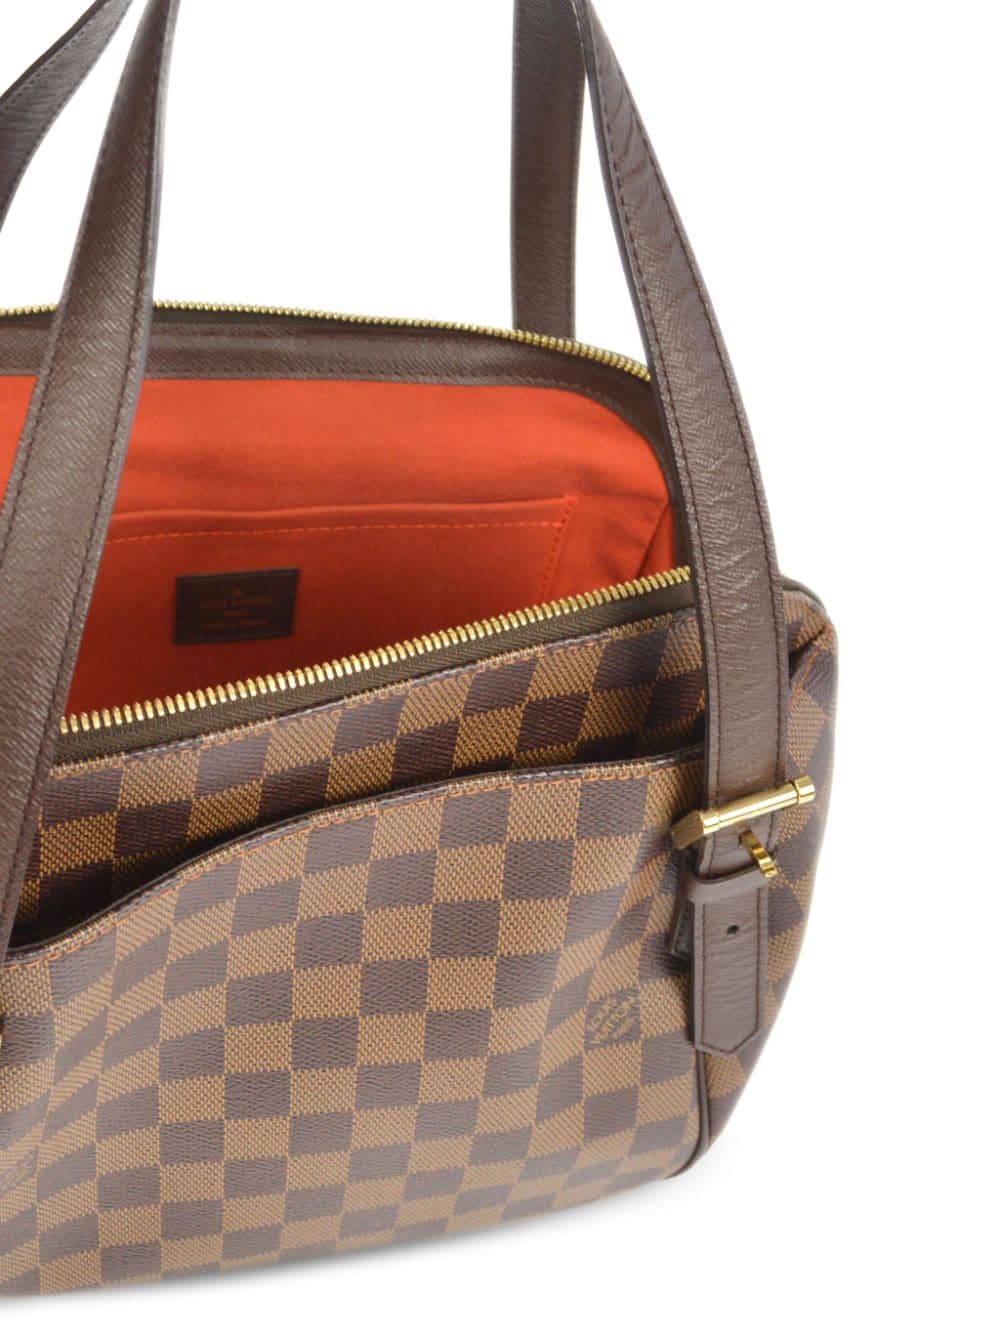 Louis Vuitton 2004 pre-owned Belem MM handbag - Bruin